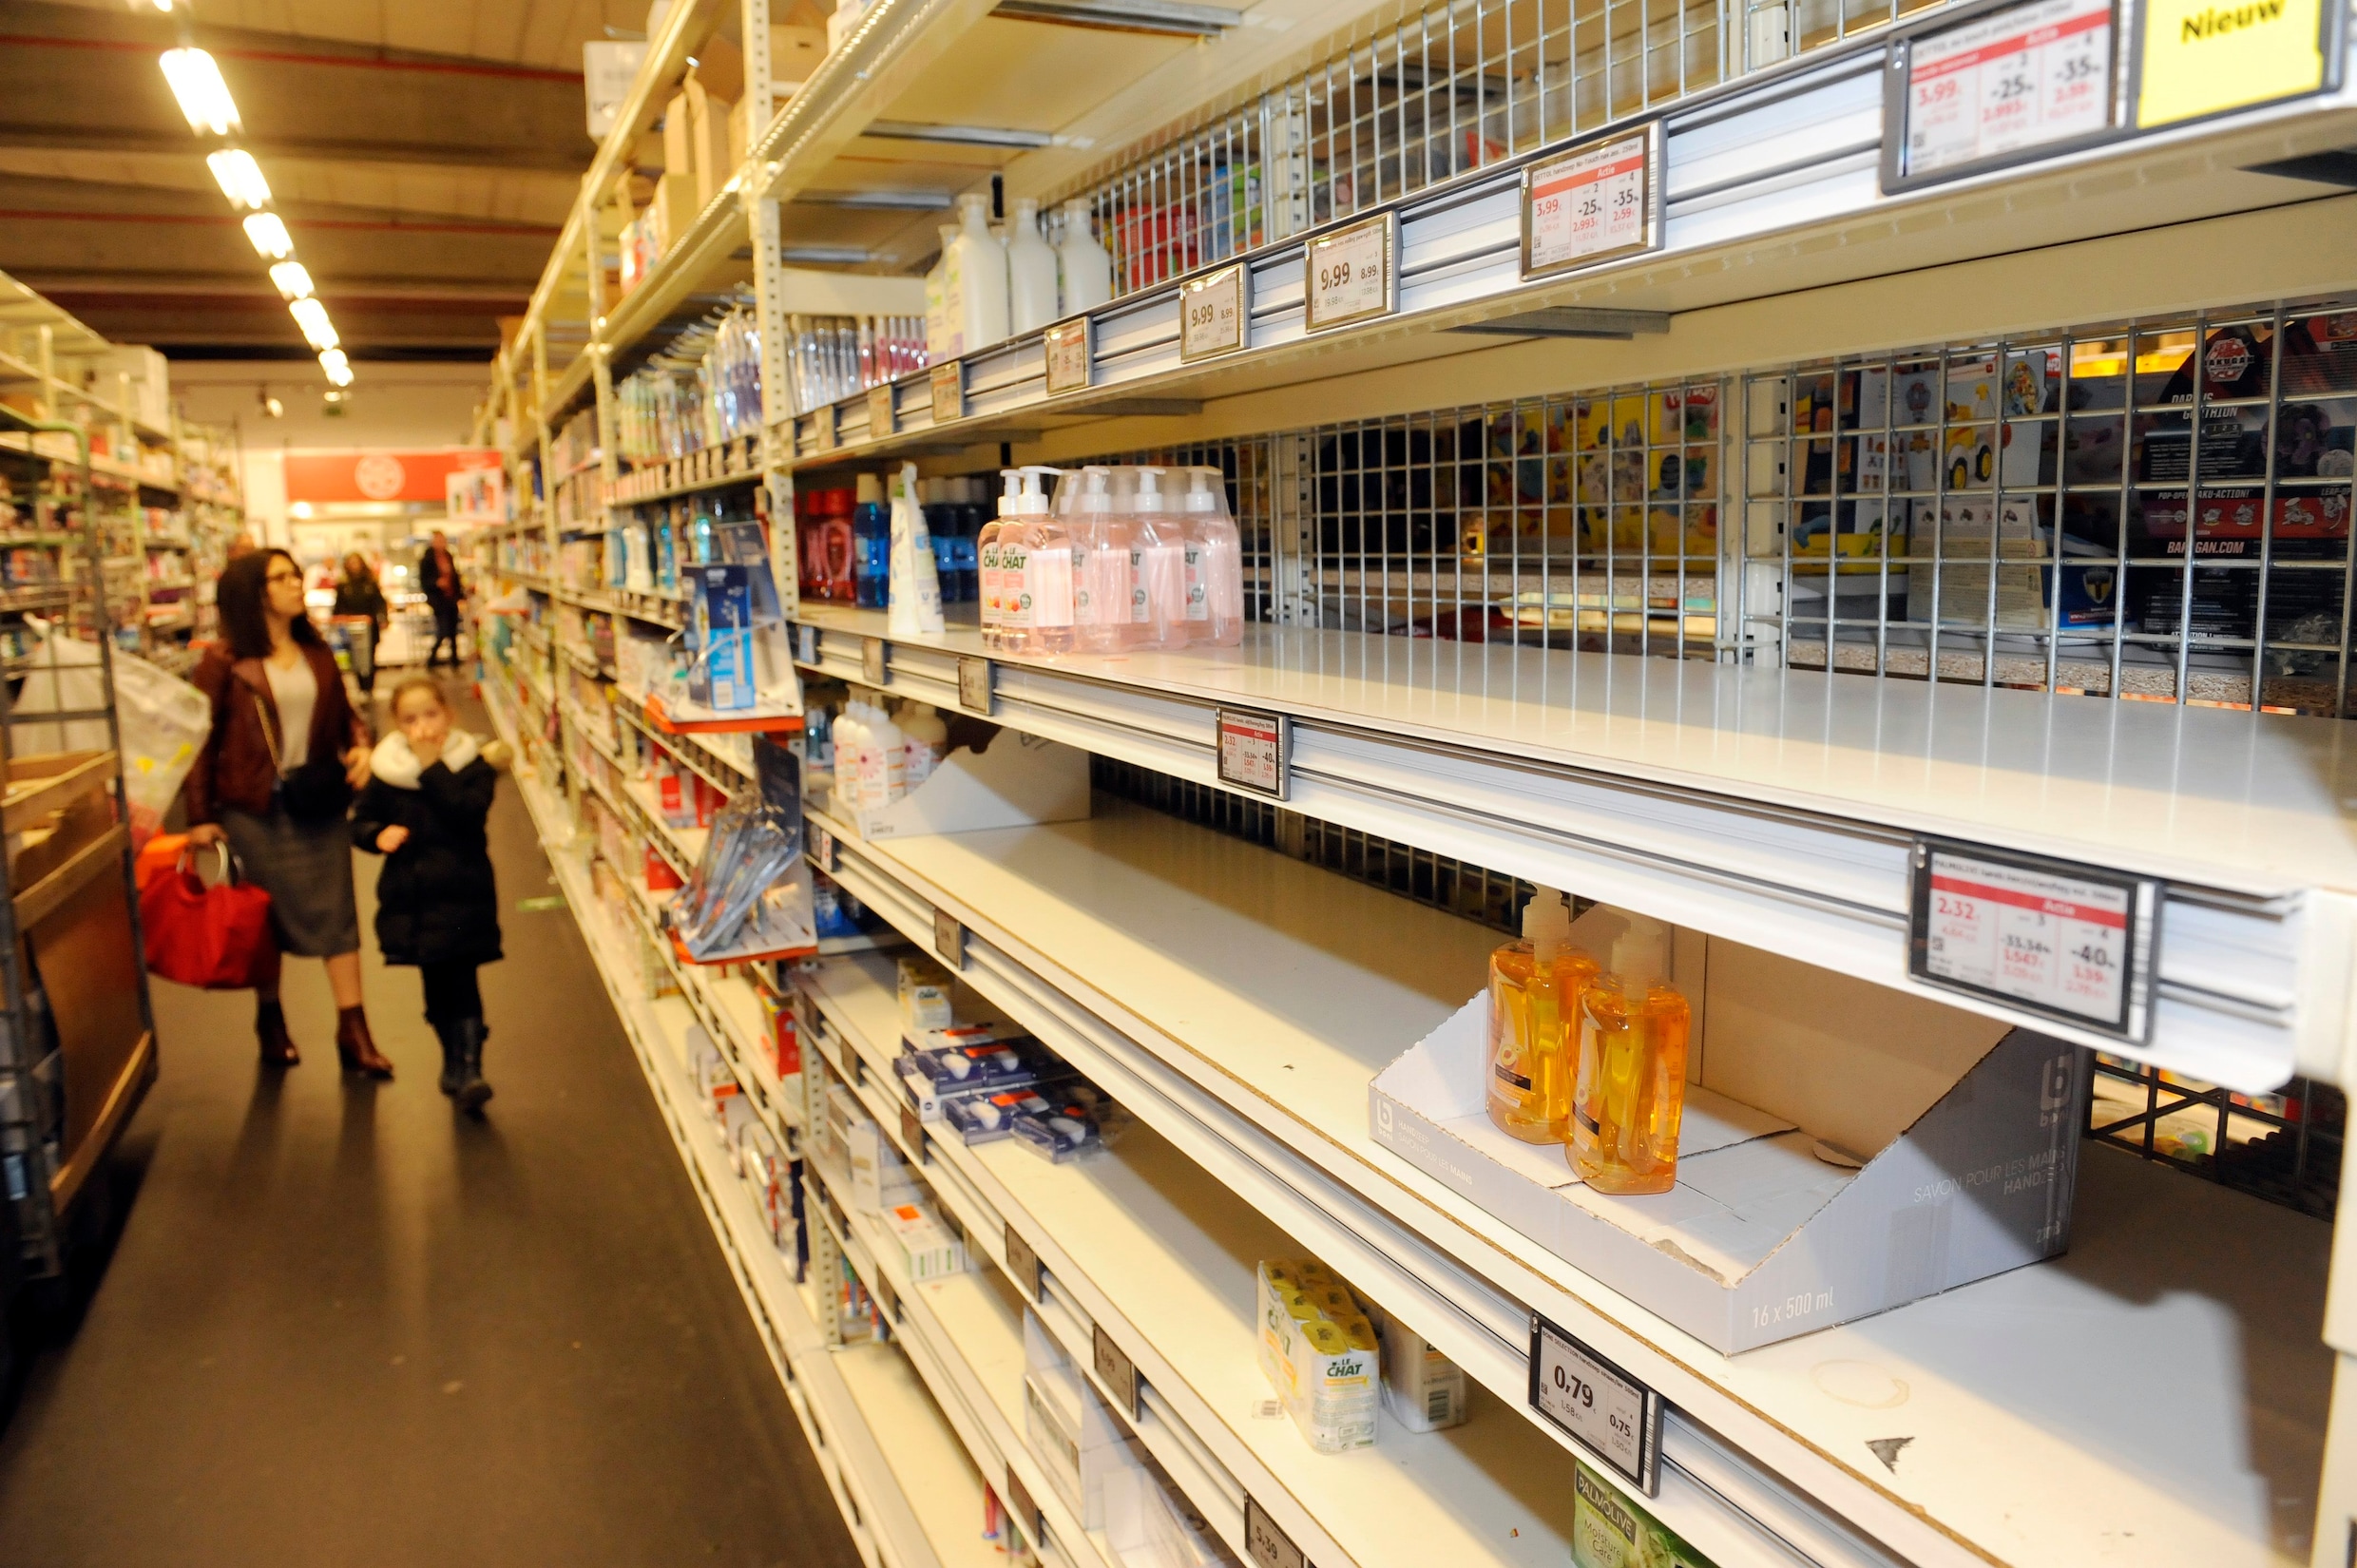 Binnenkort nog meer lege winkelrekken? Prijsconflicten zetten relaties leveranciers en supermarkten onder druk